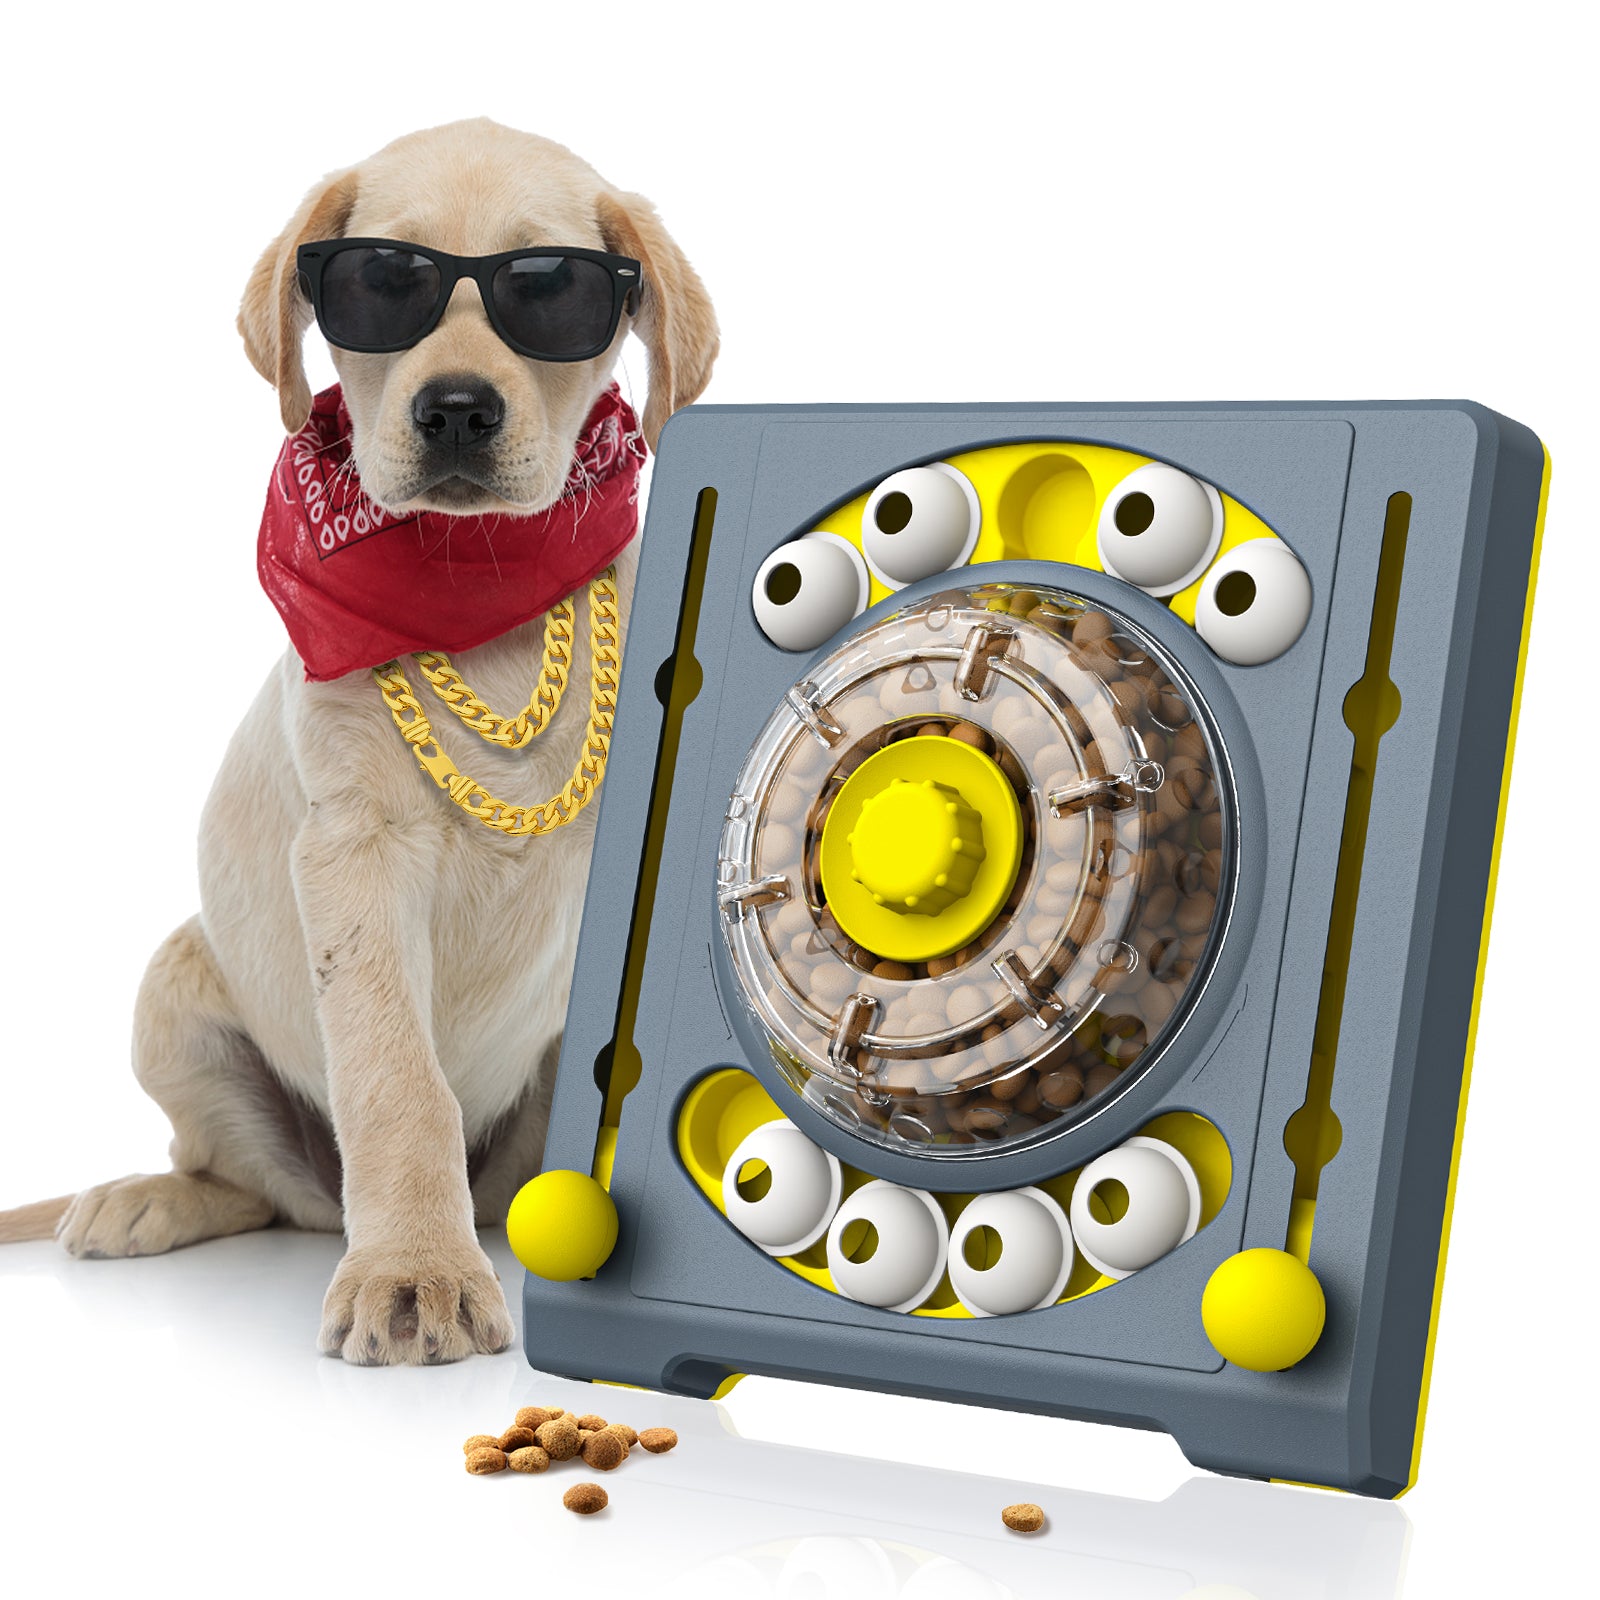 KADTC Puzzle Toys for Dog Boredom and Mentally Stimulating,Slow